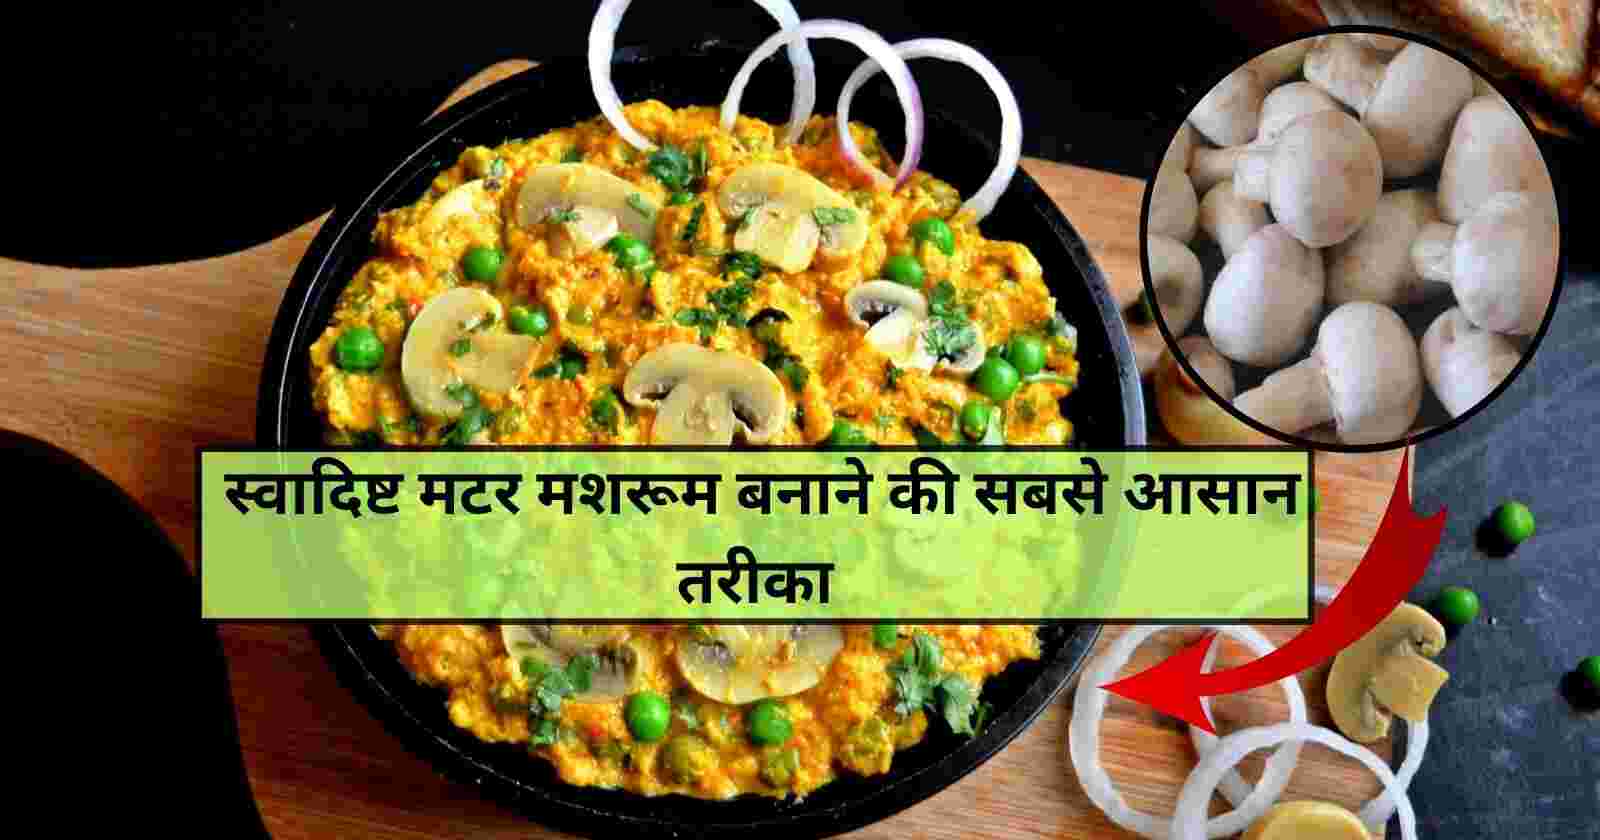 Matar Mushroom Recipe In Hindi: सर्दियों के दिनों में मशरुम से बनाये एक और स्वादिष्ट डिश hinditonews.in